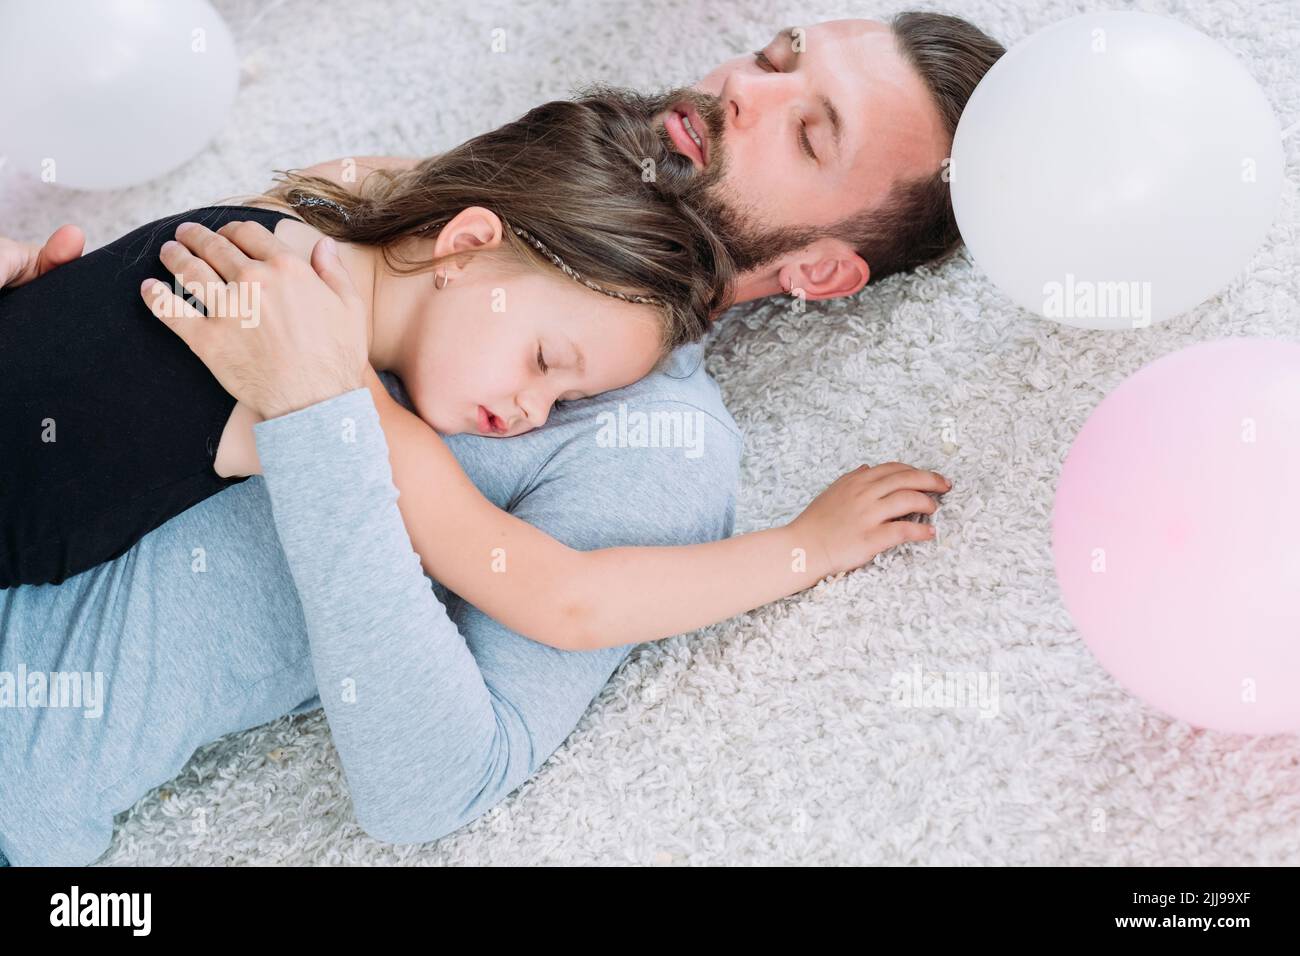 parenting figlia stanca del padre addormentata abbraccio amore Foto Stock